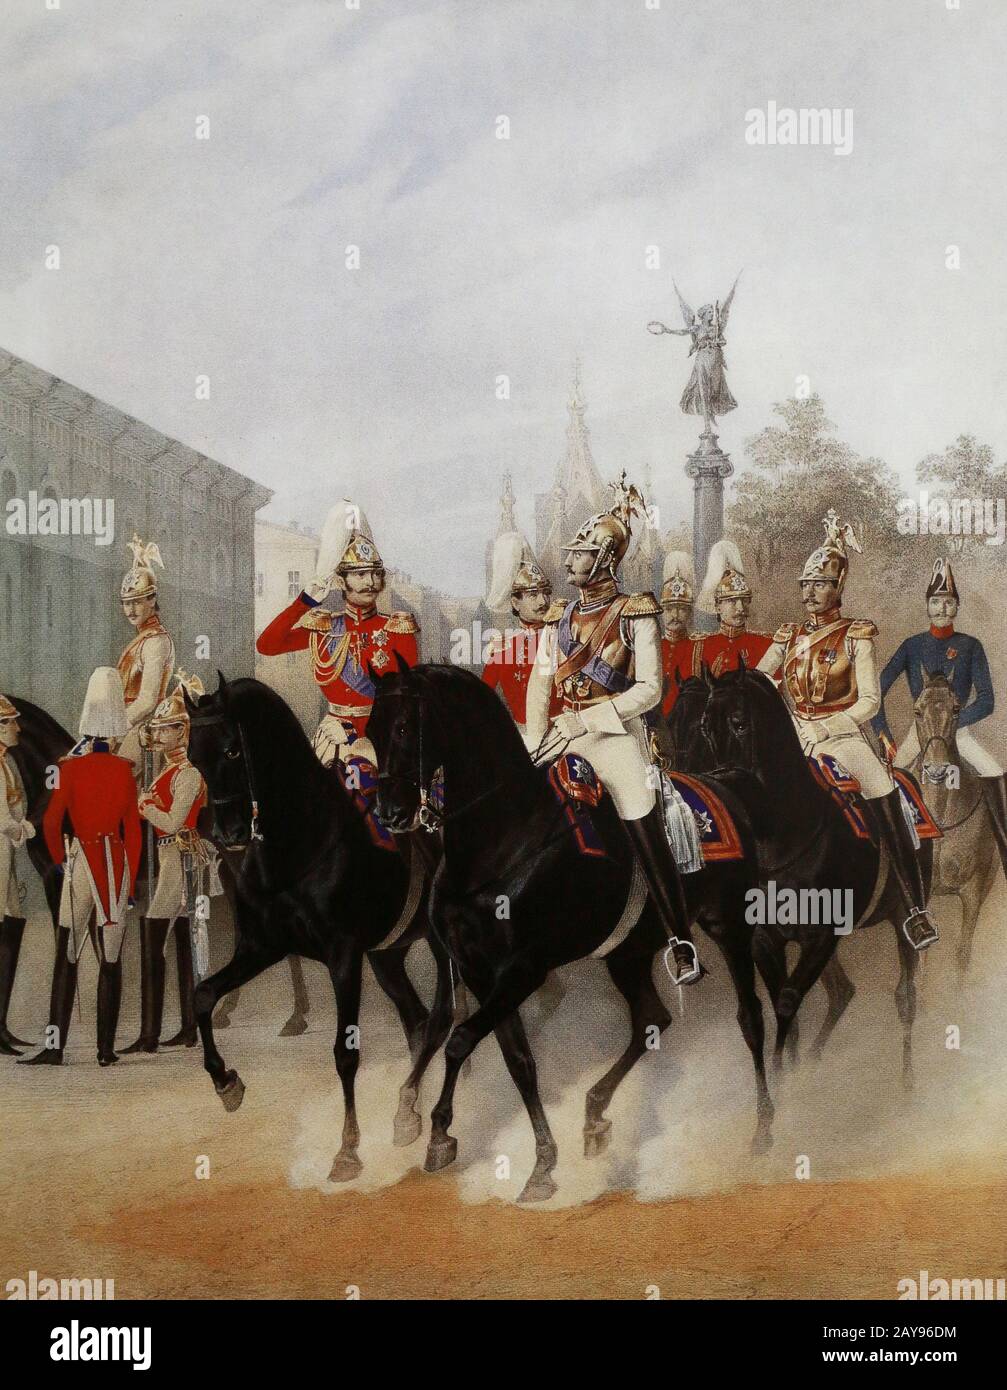 L'empereur russe Nicolas I Pavlovich et le Grand-duc Alexandre Nikolaïevitch avec sa rétine. Peinture de K. Schmidt, XIXe siècle. Banque D'Images